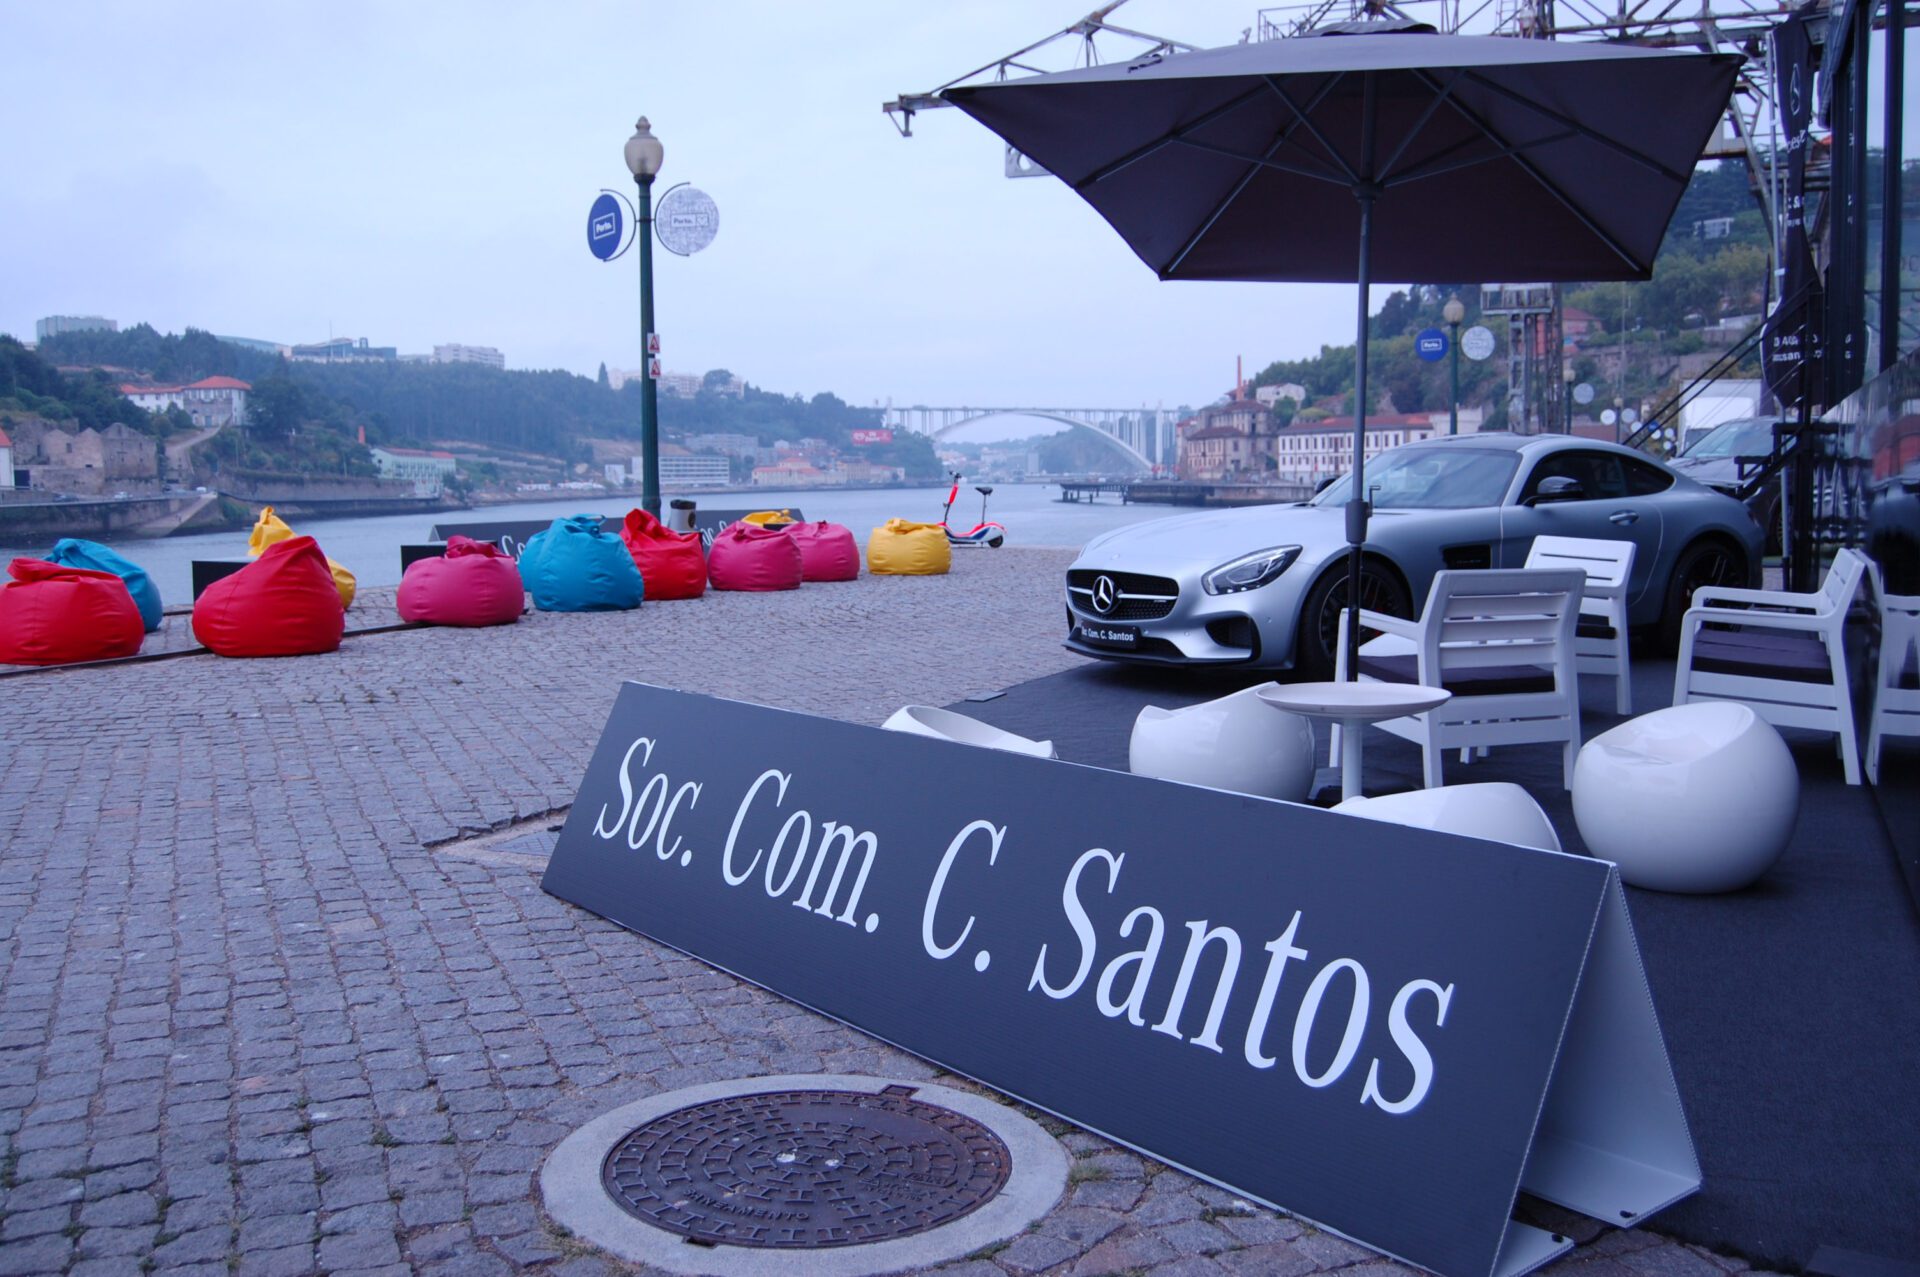 Sociedade Comercial C. Santos é parceiro oficial do Grande Prémio de Portugal de Motonáutica